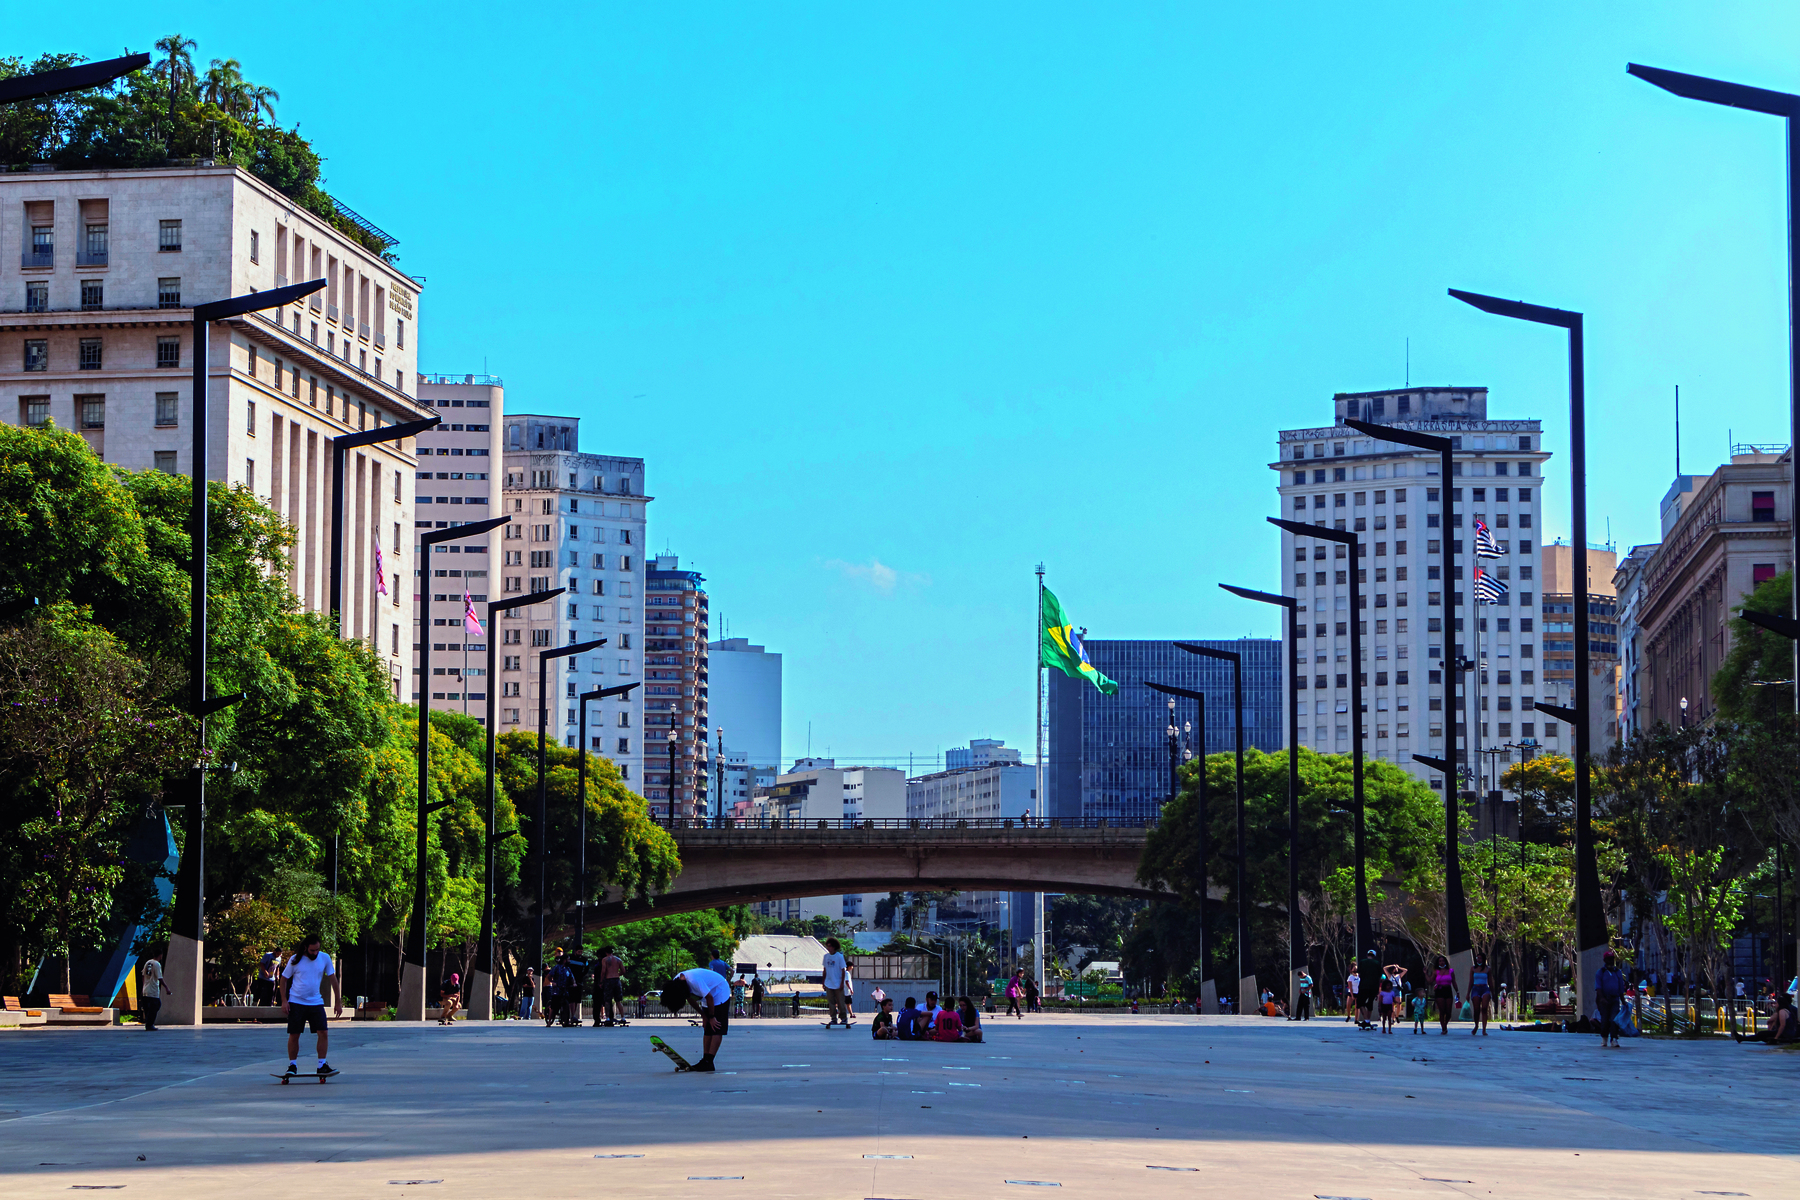 Fotografia. Vista de uma praça larga com postes de luz e árvores nas laterais. No centro há pessoas sentadas e andando de skate. Ao fundo há um viaduto com uma bandeira do Brasil.